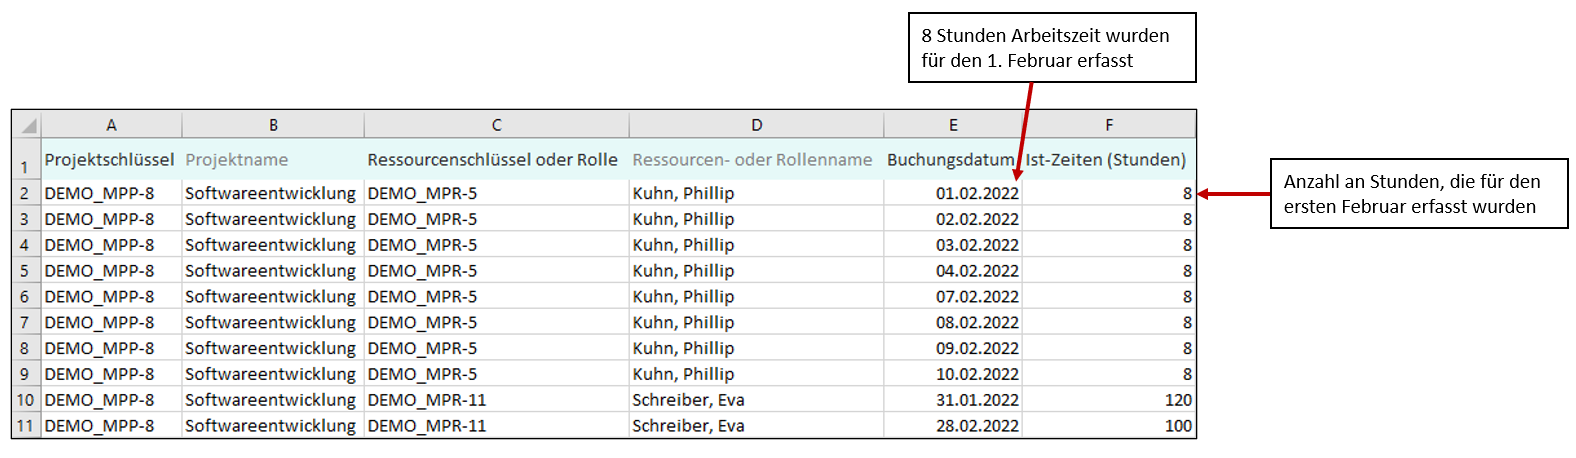 Excel_Buchungsdatum_DE_1.1.png